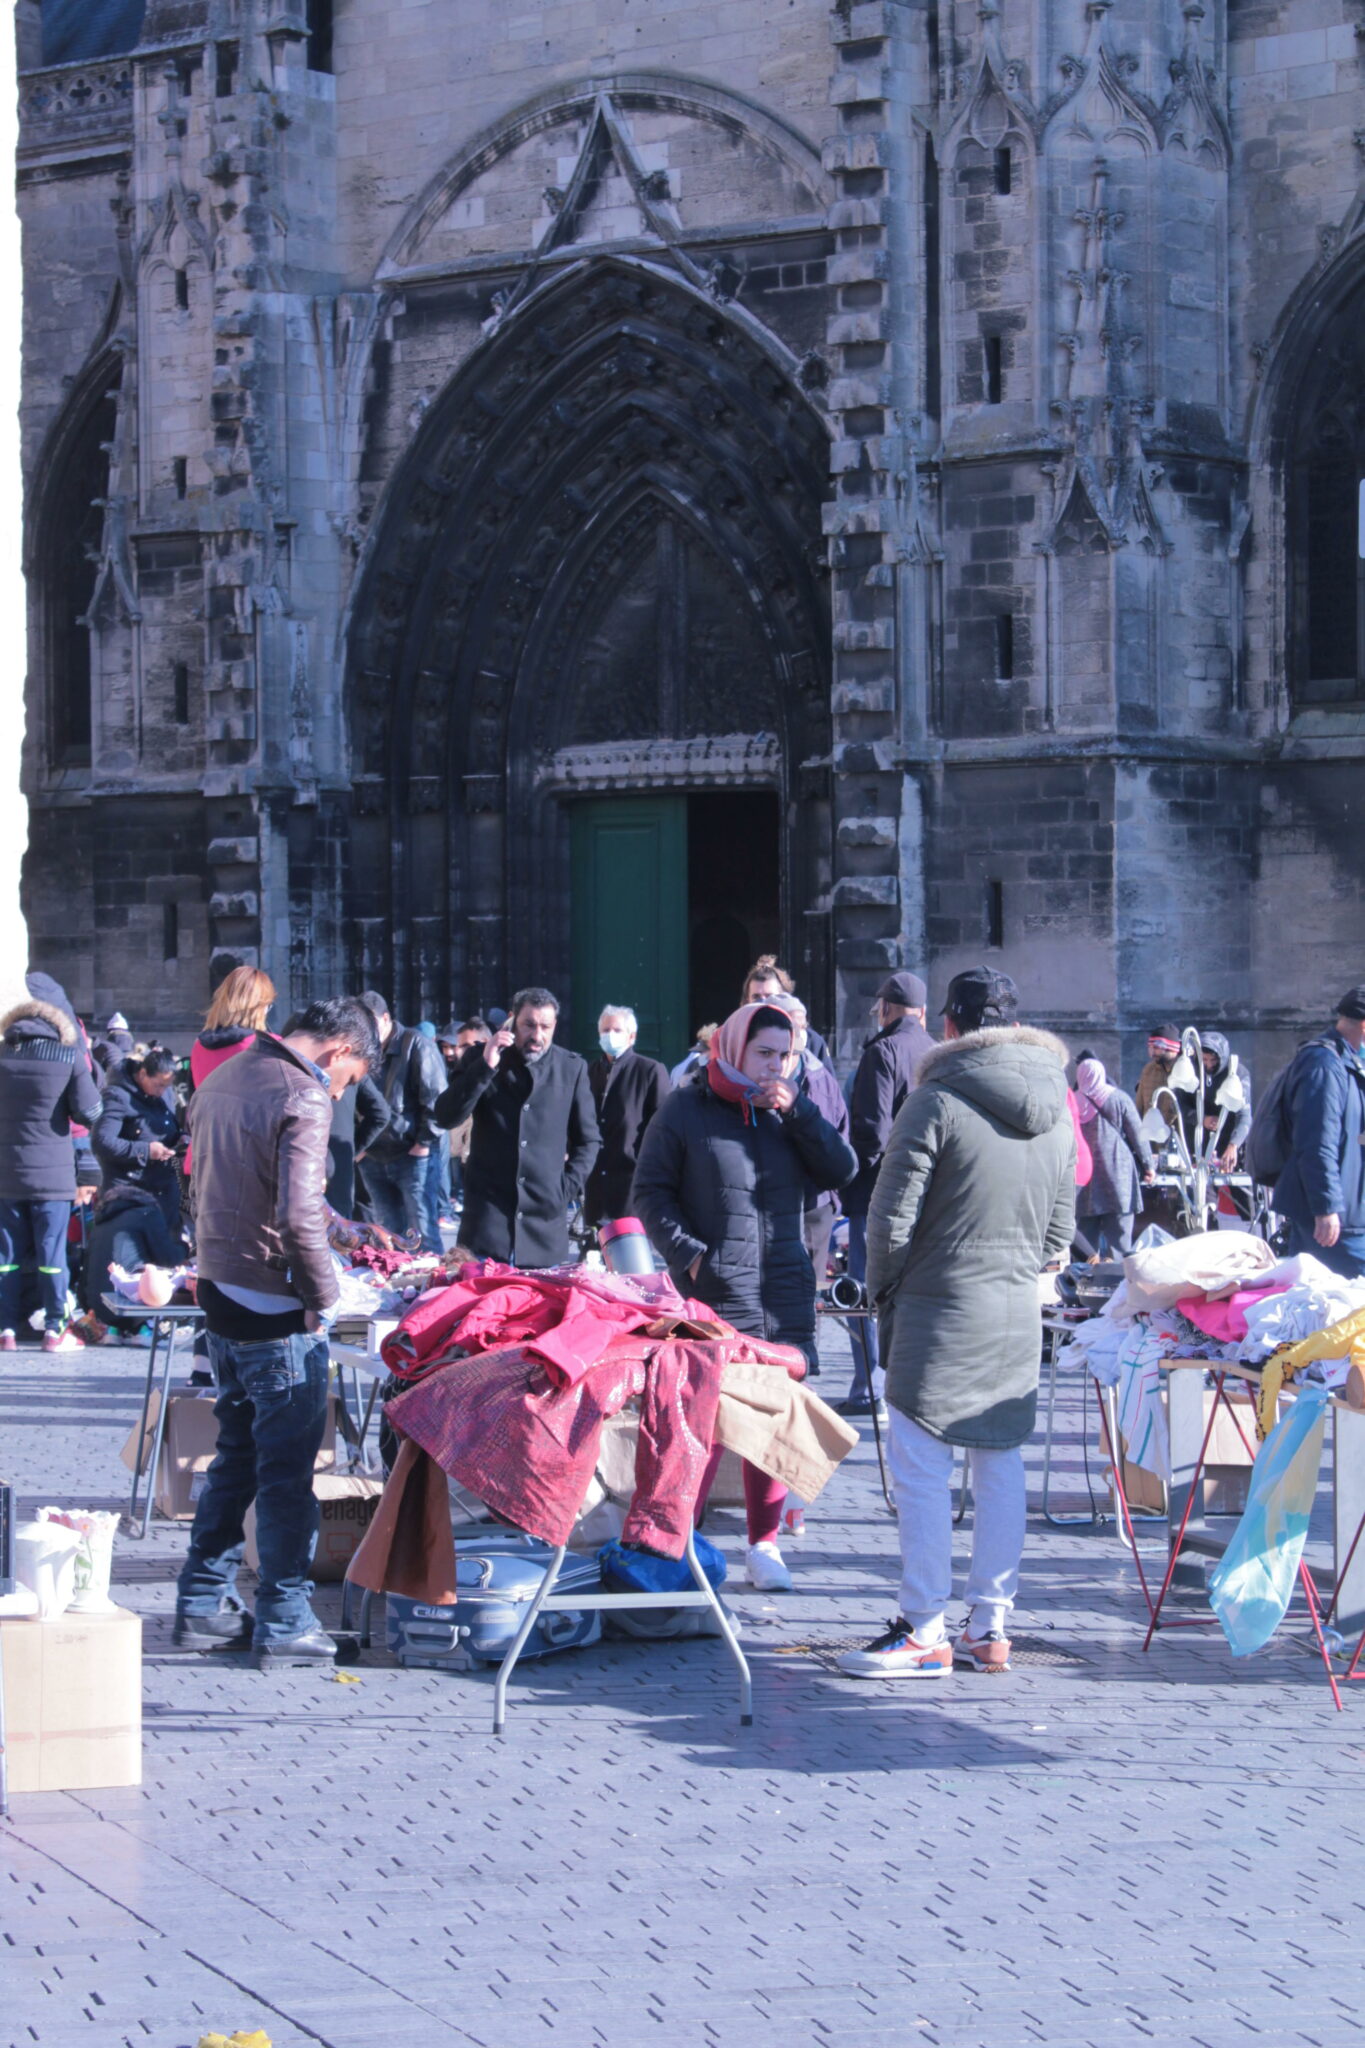 Un peu plus loin, sur la place St-Michel, la foule se presse et scrute les marchandises présentées sur les différents stands. Tissus, vaisselle, meubles, ustensiles du quotidien, la brocante est le lieu idéal pour dénicher des objets à un prix défiant toute concurrence.